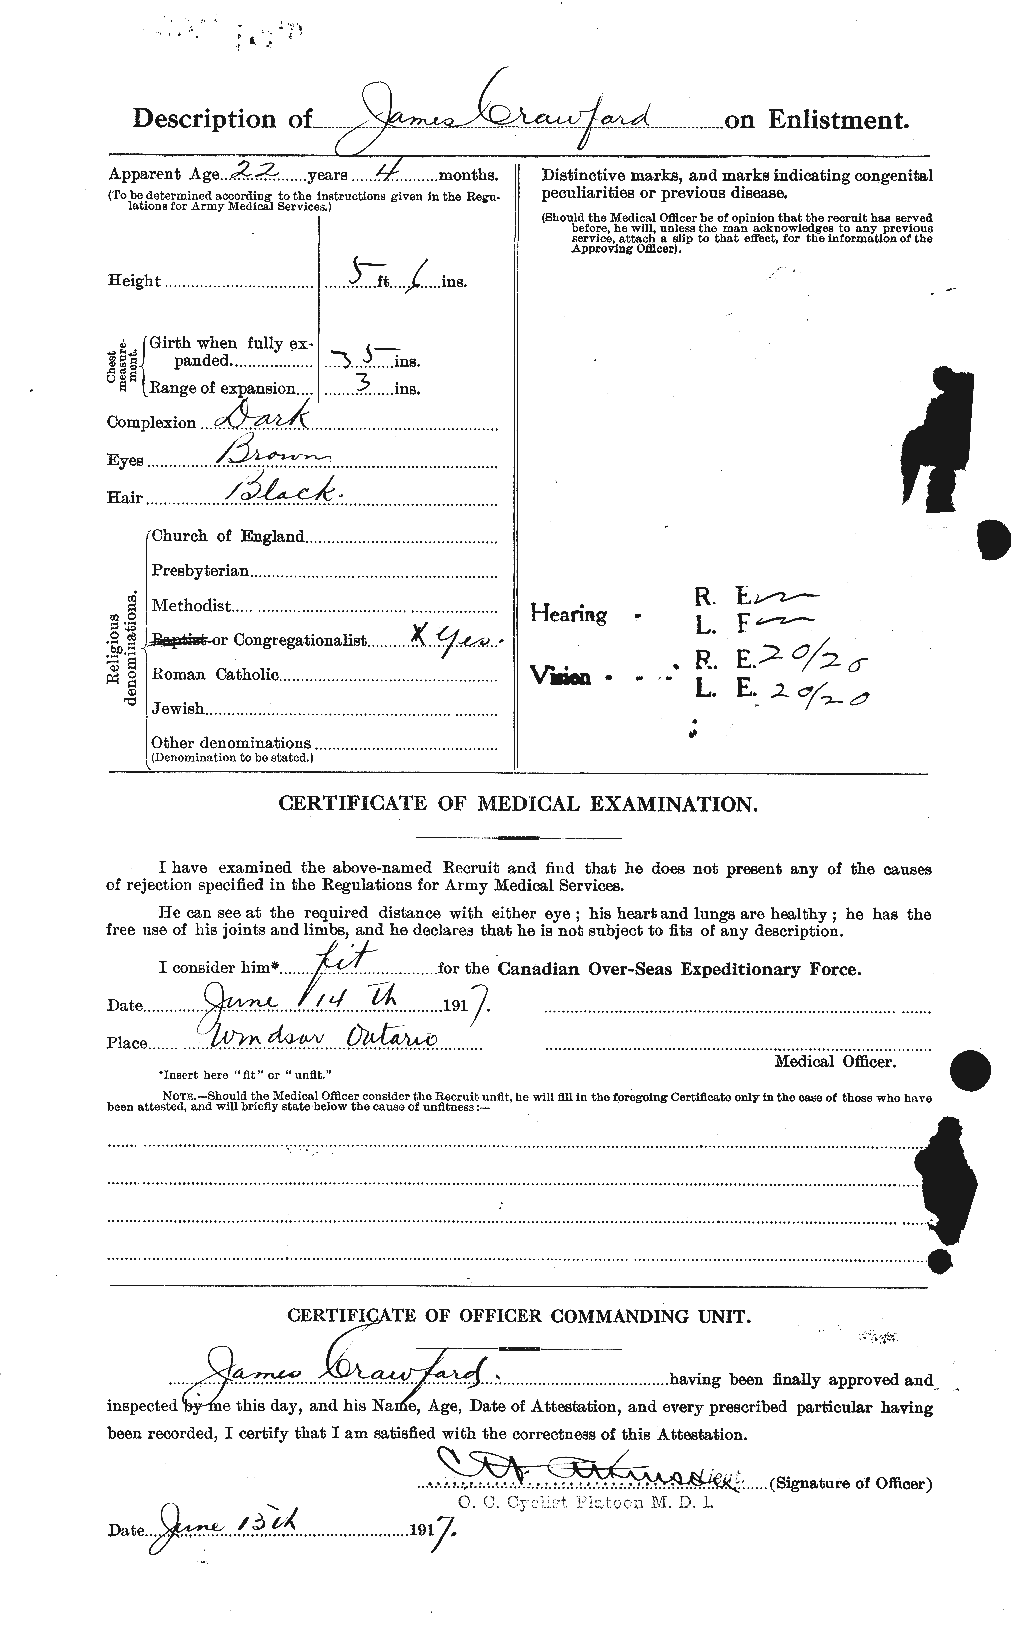 Dossiers du Personnel de la Première Guerre mondiale - CEC 062770b